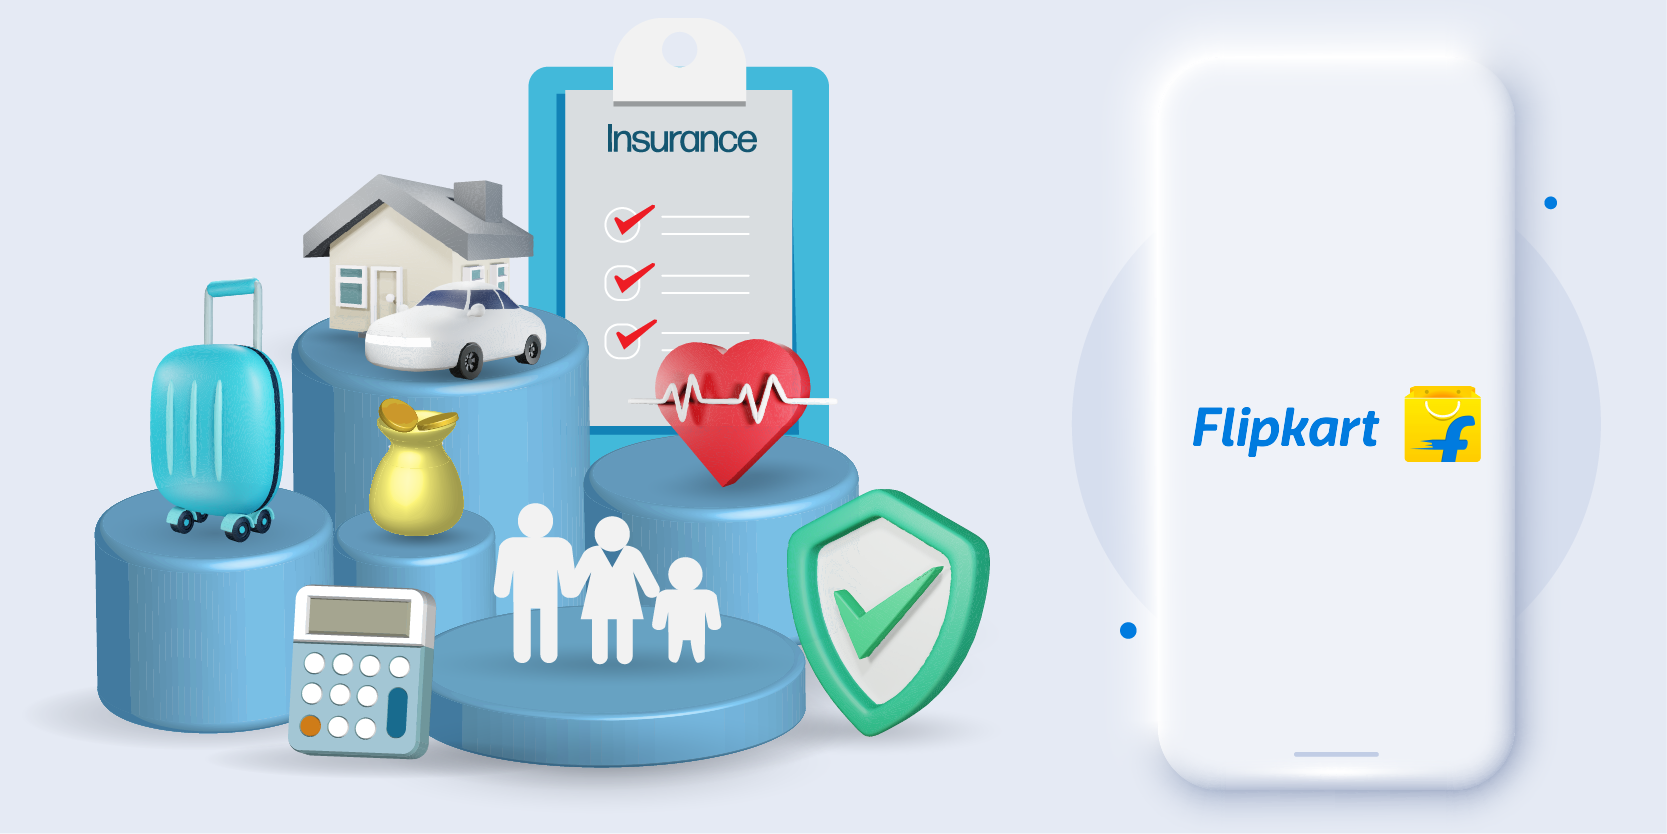 Flipkart Insurance 